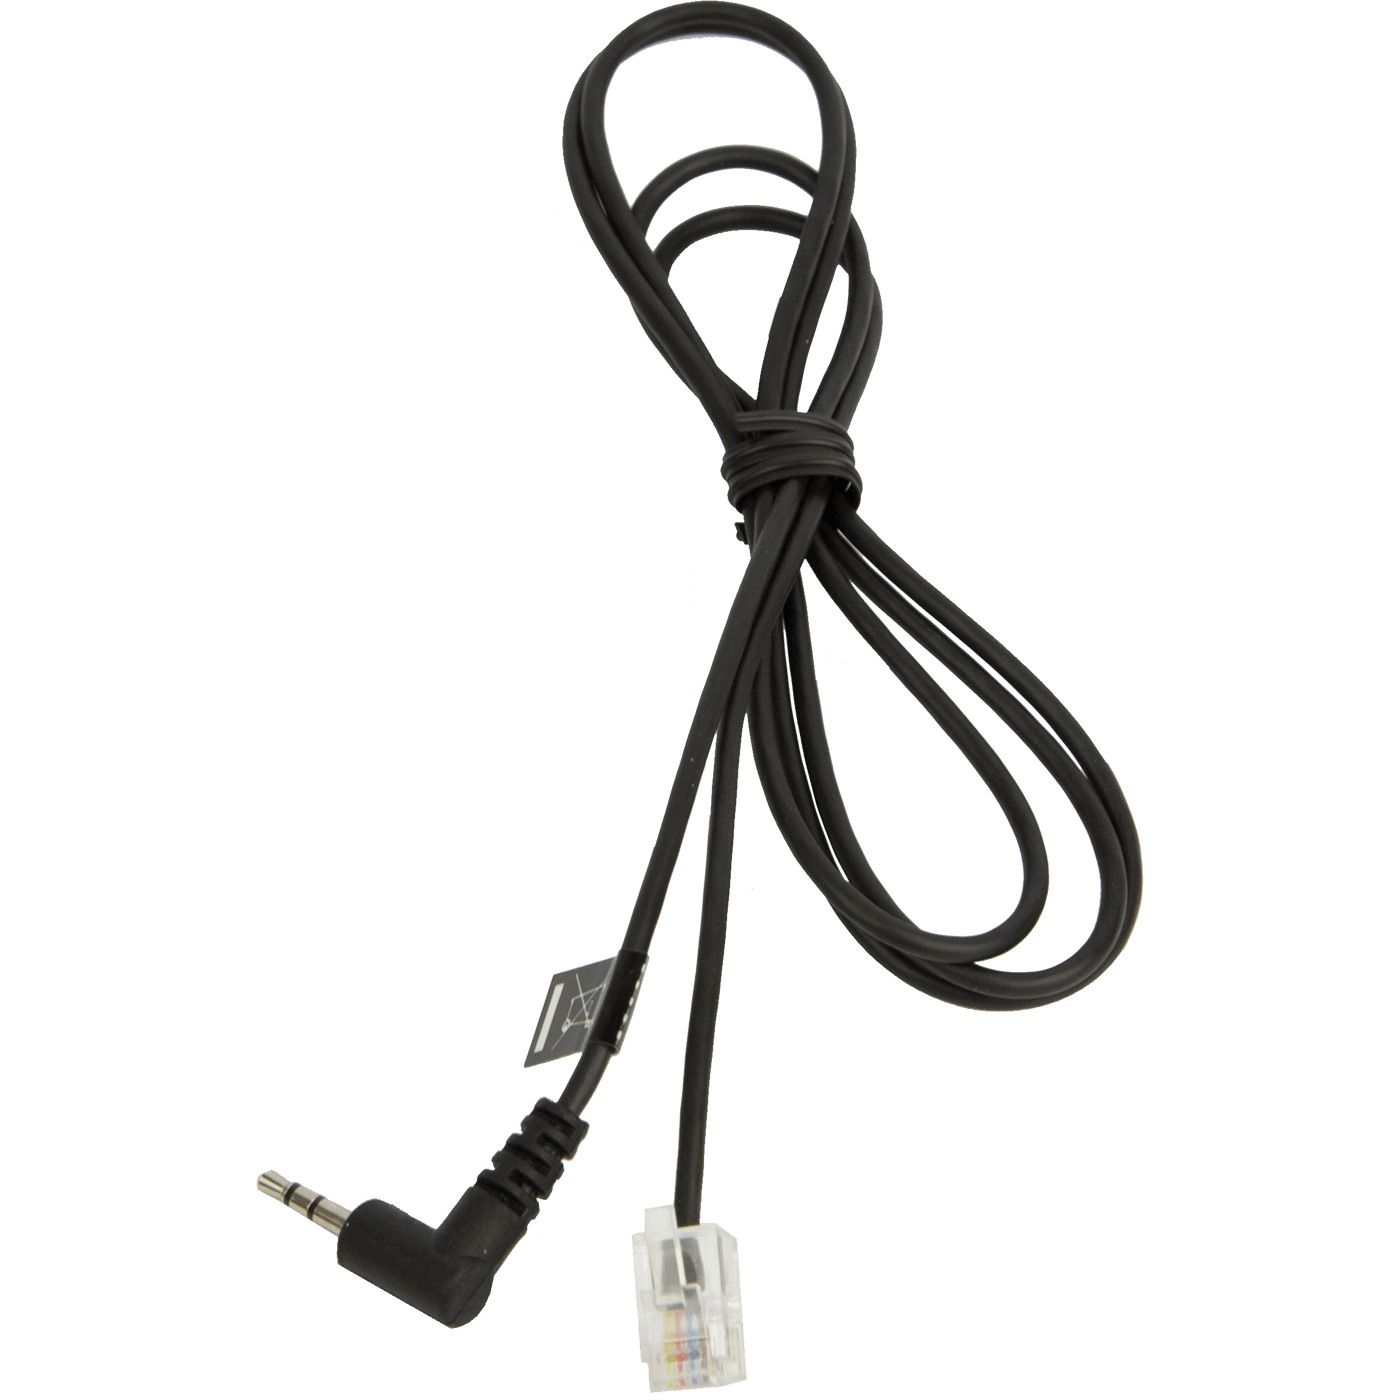 Jabra Headset-Kabel - RJ-10 männlich zu Mikro-Stecker